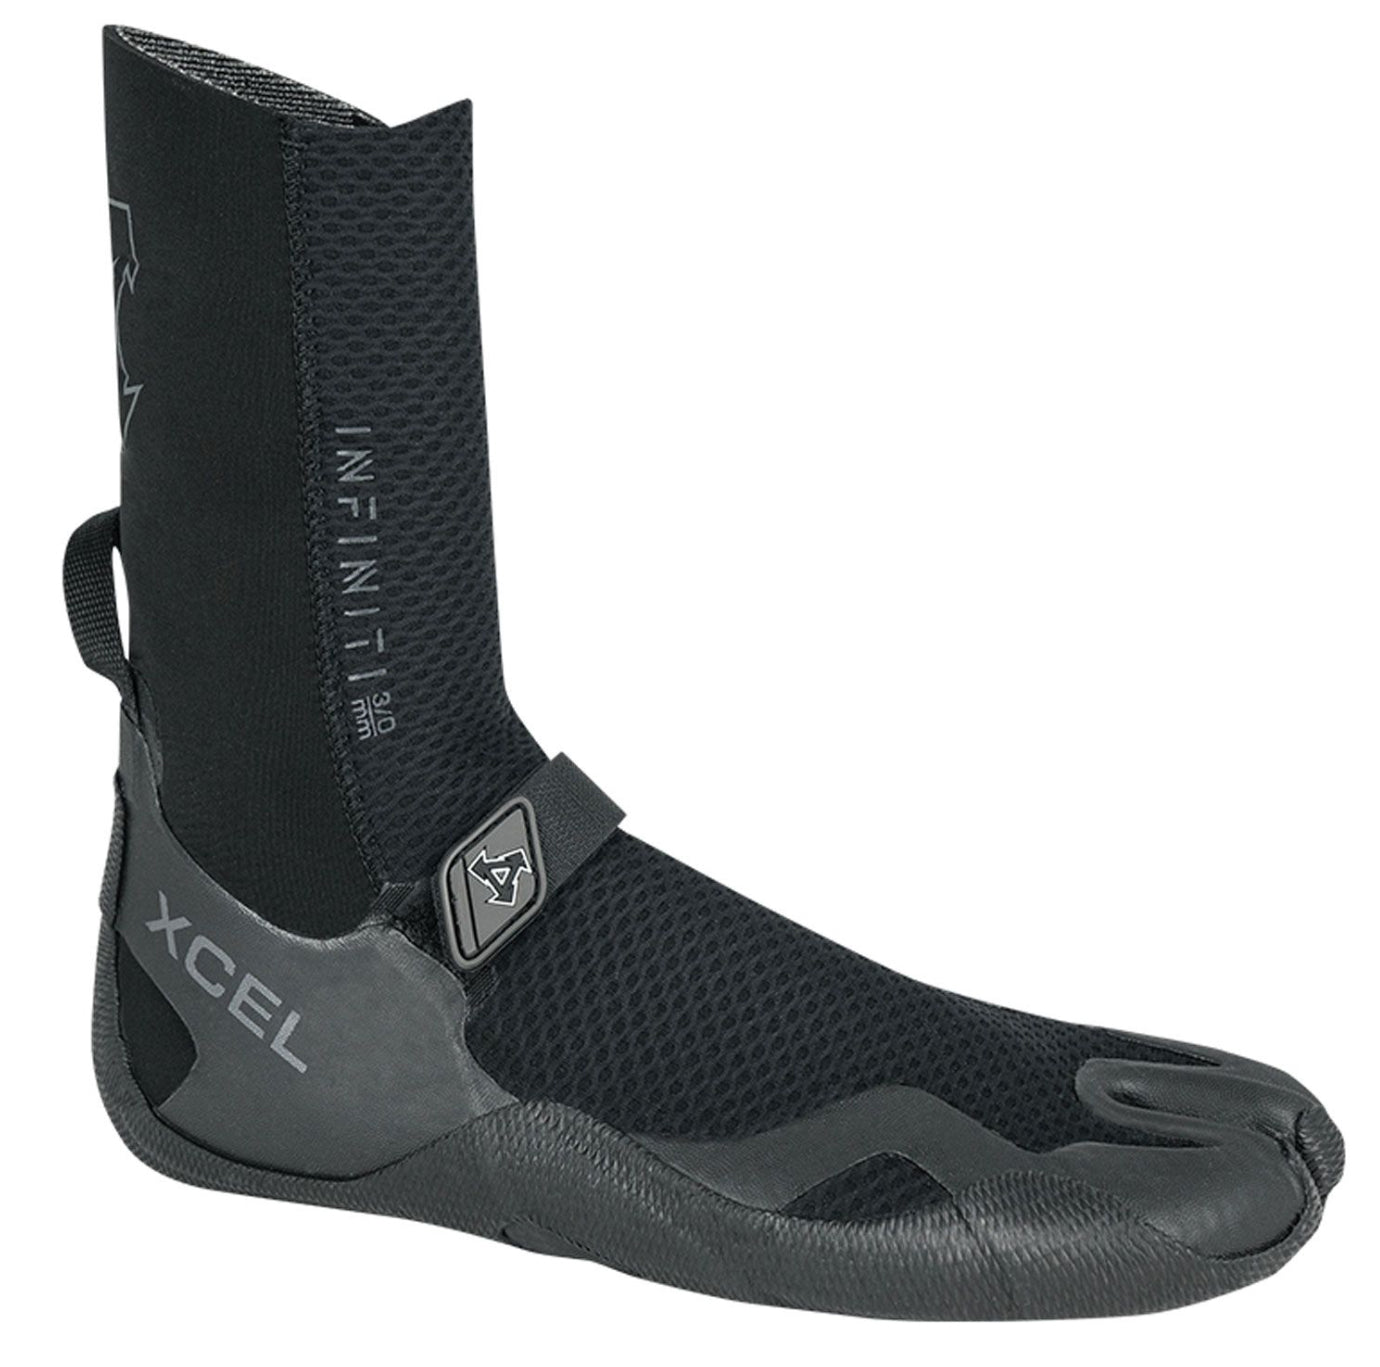 Xcel 5mm split toe Infiniti boots